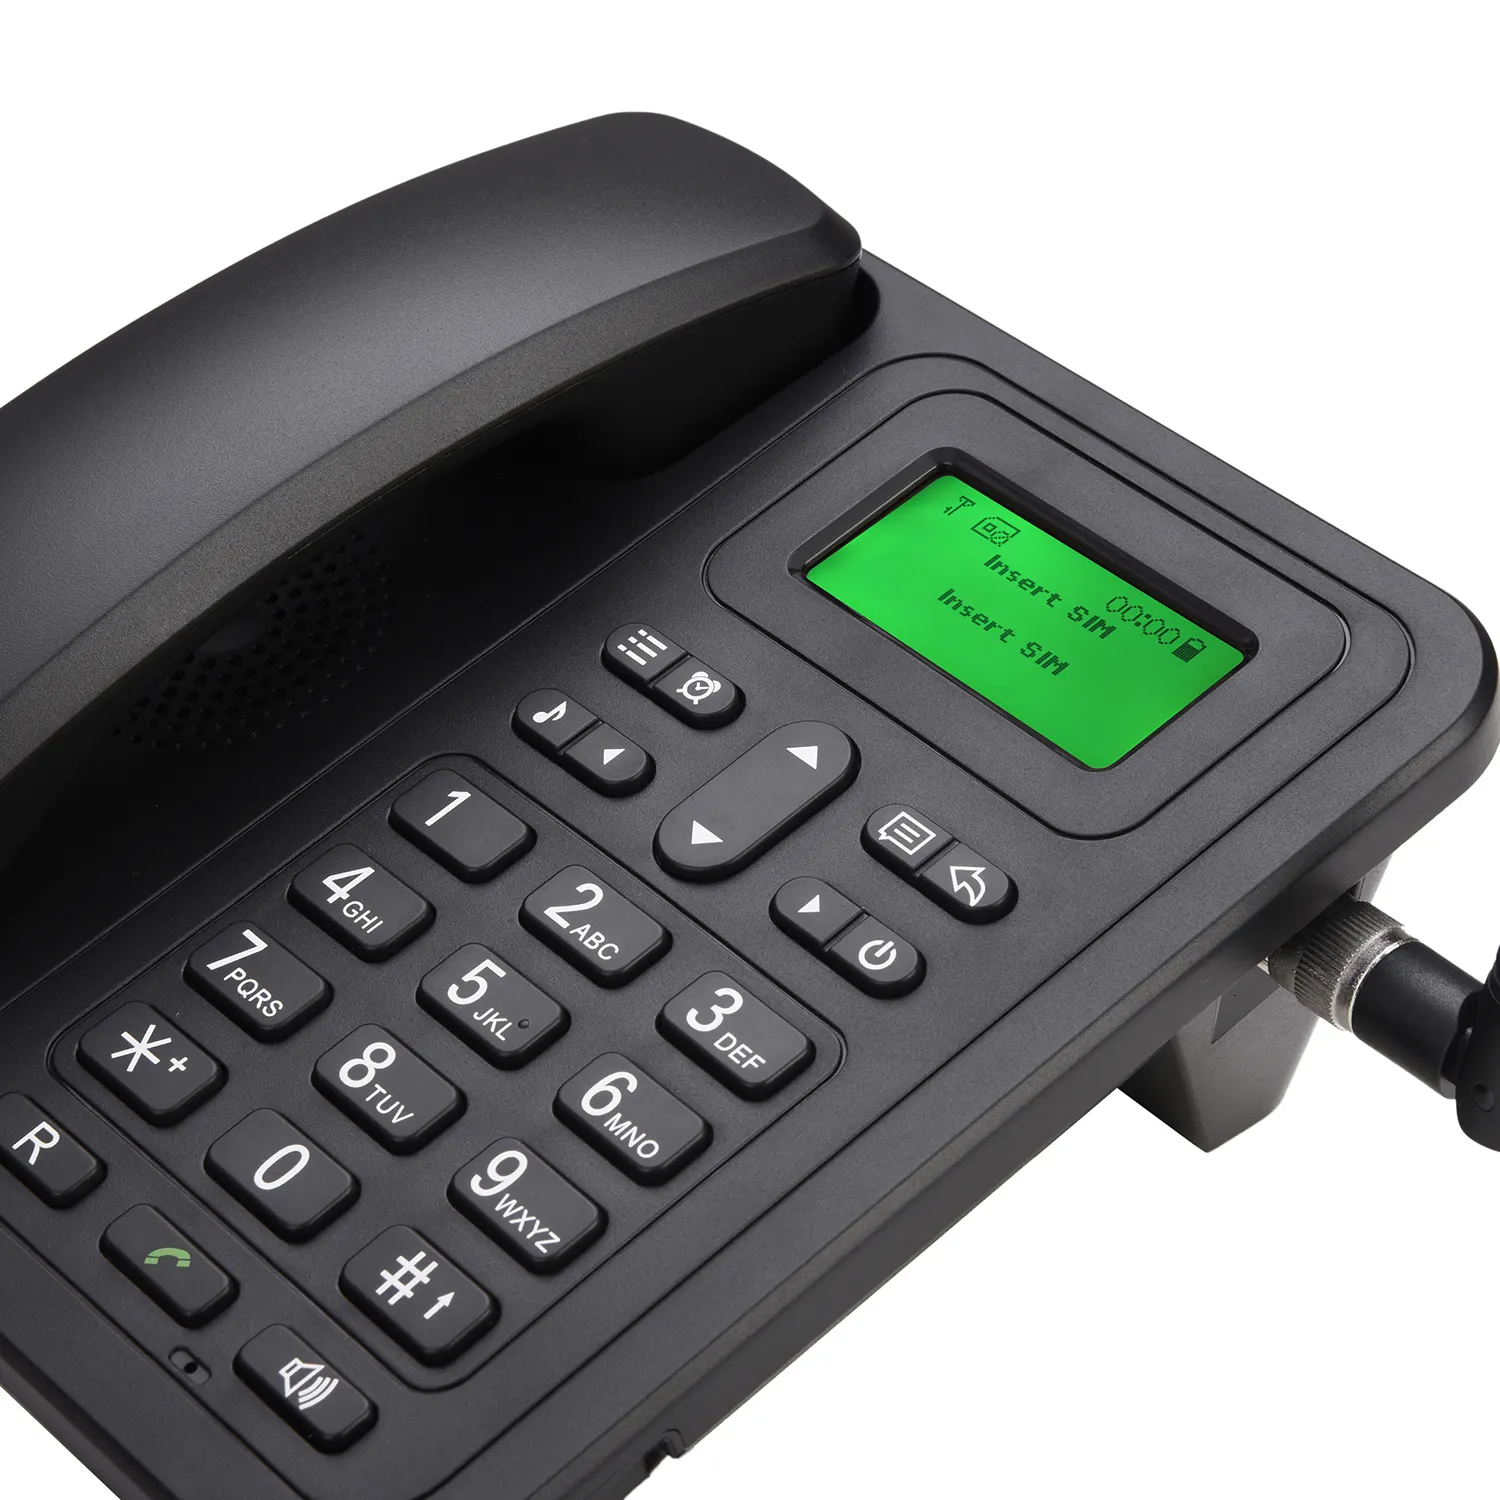 โทรศัพท์ไร้สายตั้งโต๊ะ3G WCDMA,โทรศัพท์ไร้สายสำหรับใช้ในสำนักงาน FWP LS932